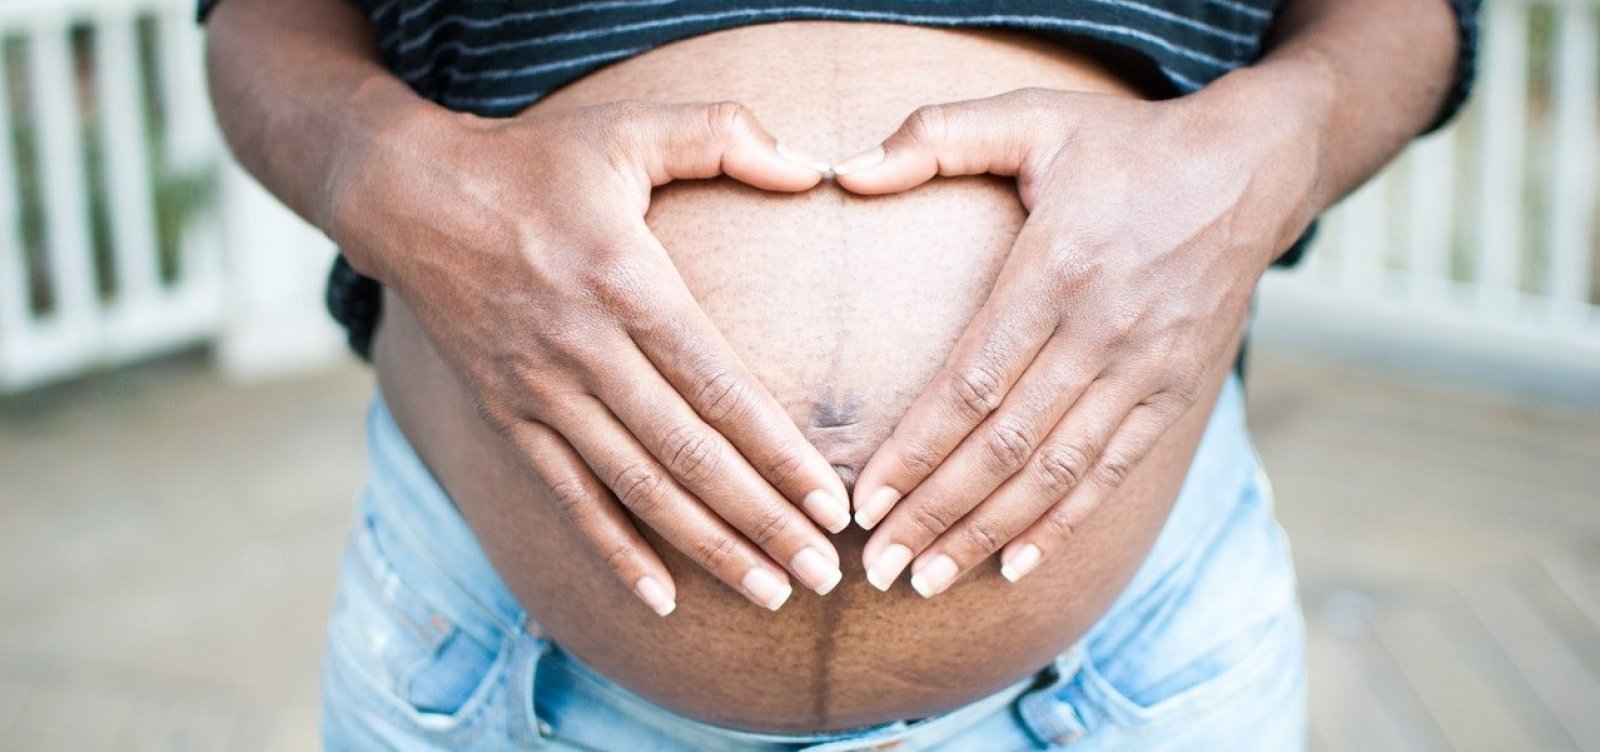 Ministério da Saúde recomenda apenas vacinas em grávidas com comorbidades; Bahia acata